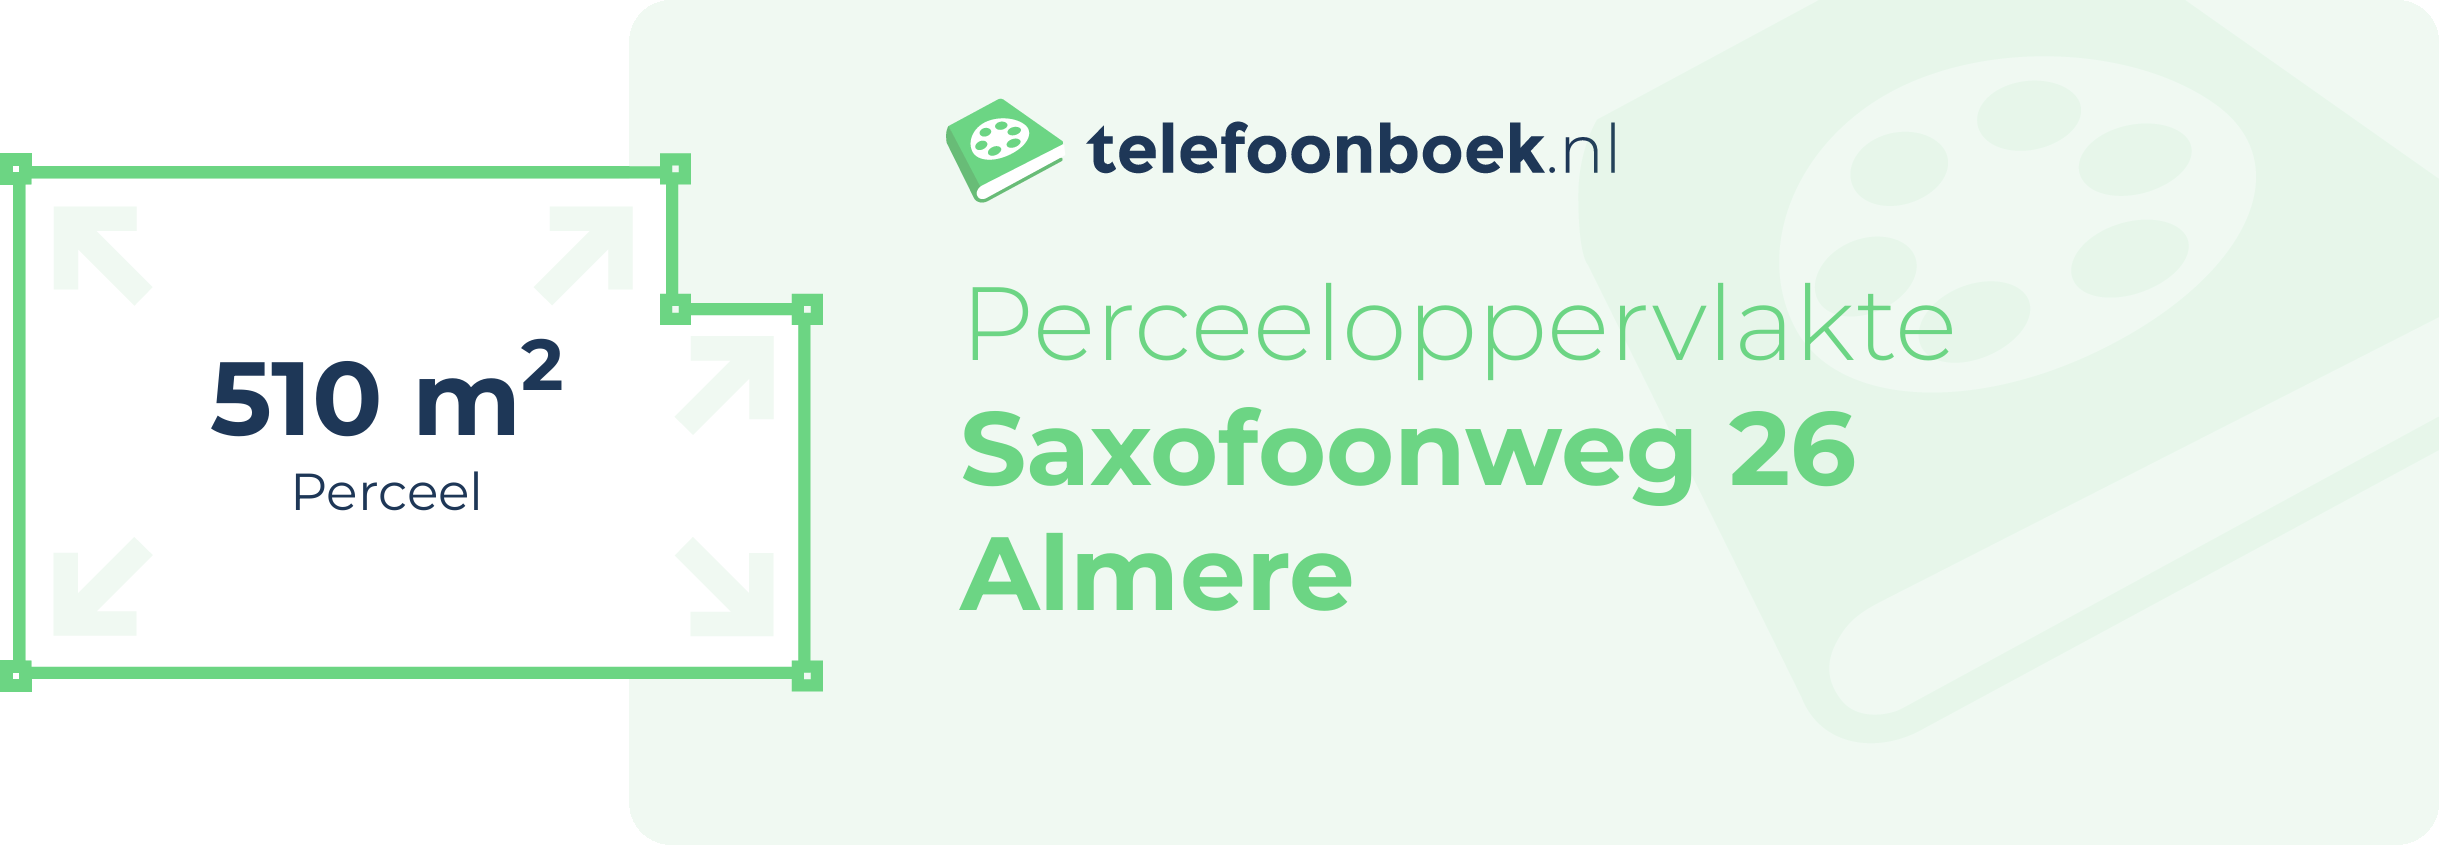 Perceeloppervlakte Saxofoonweg 26 Almere